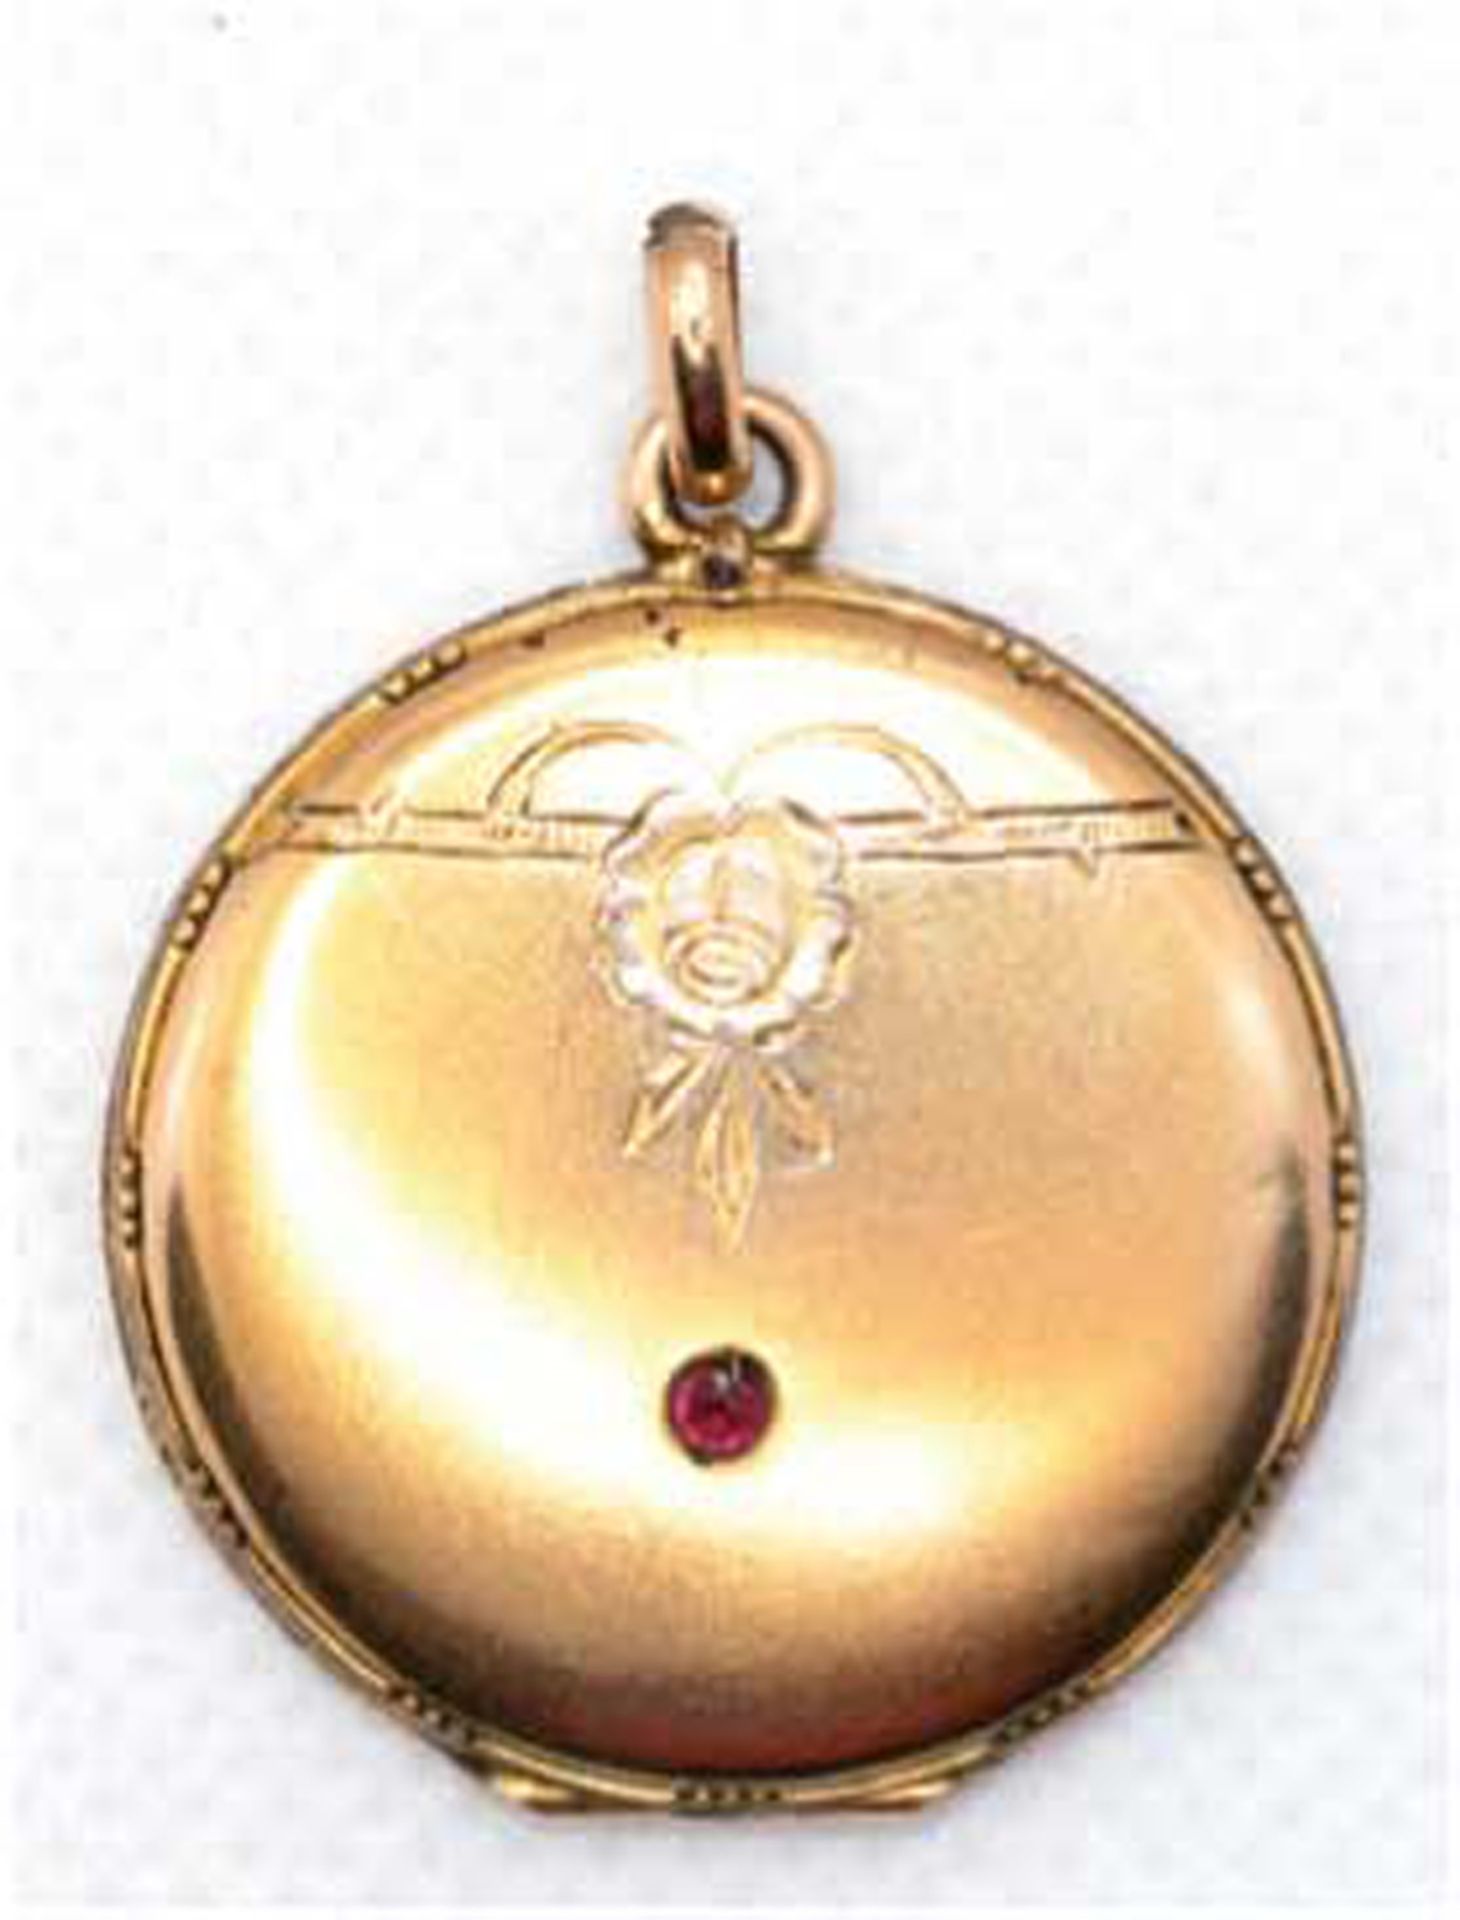 Medaillon um 1900, Golddouble, mit zeittypischem Dekor und rotem Schmuckstein, Durchmesser ca. 2,7 